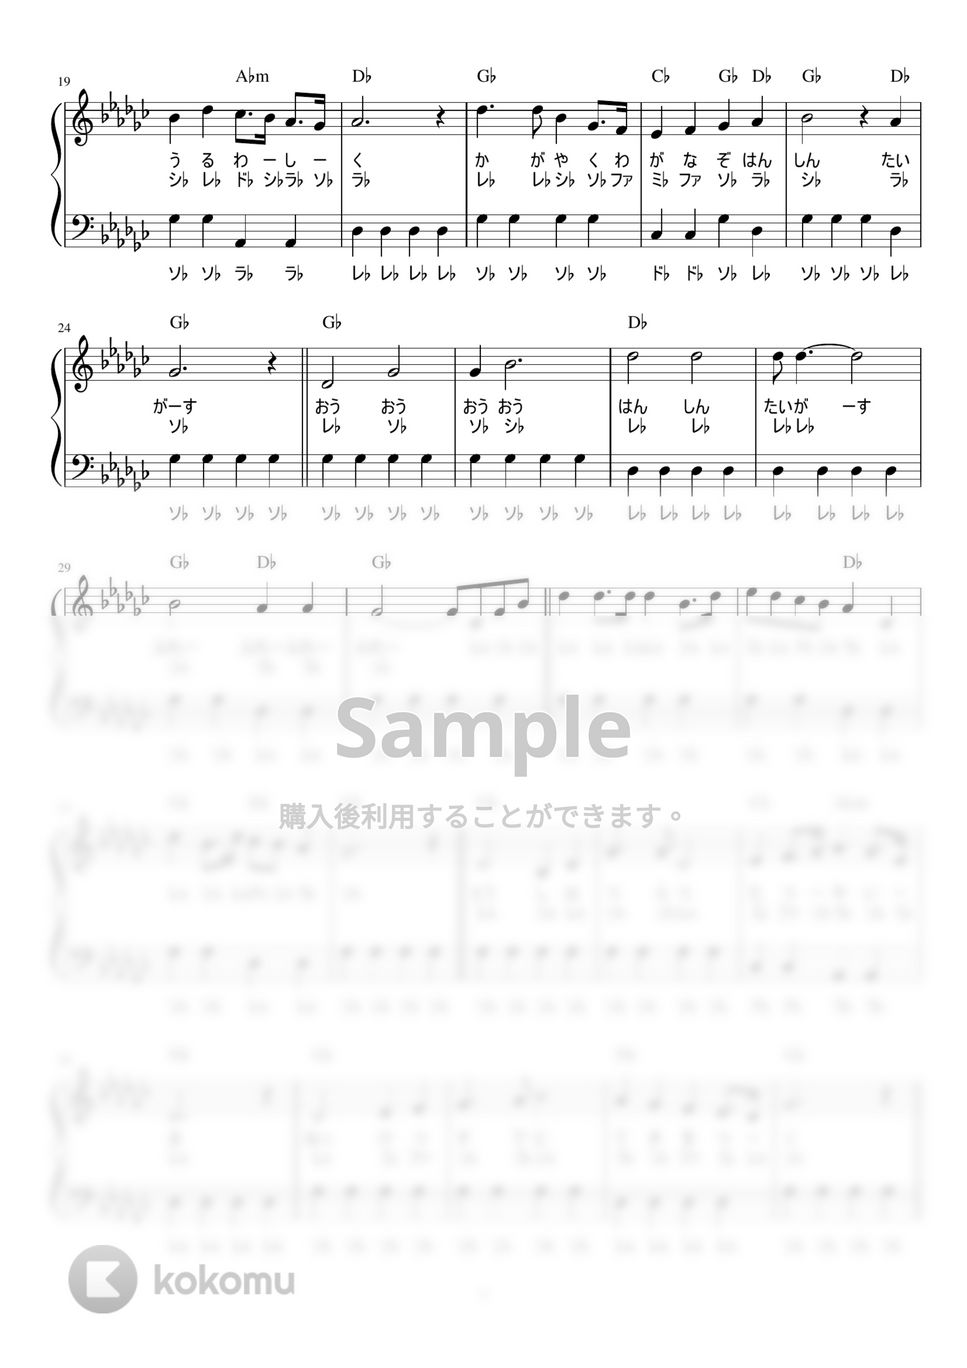 唐渡吉則 - 六甲おろし (かんたん / 歌詞付き / ドレミ付き / 初心者) by piano.tokyo